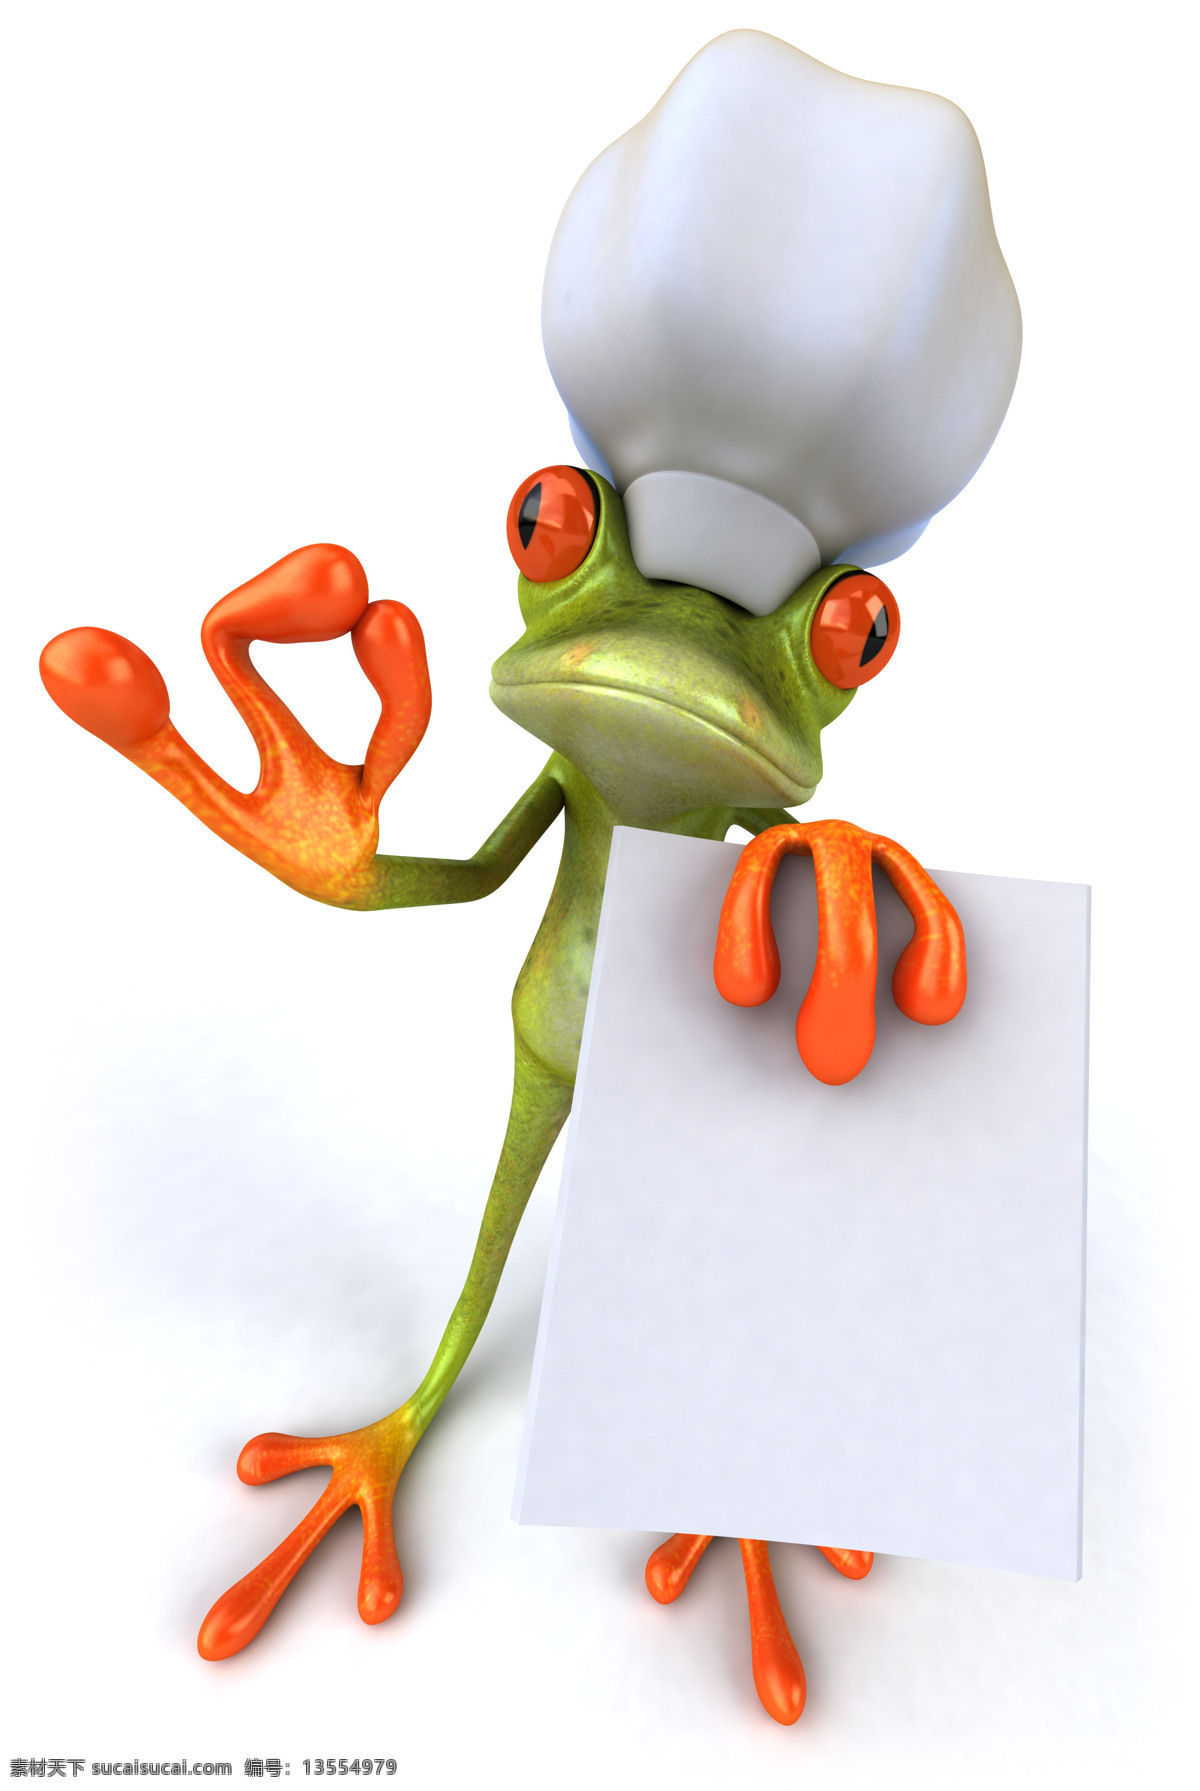 3d青蛙 卡通青蛙 白板 空白 疯狂青蛙 可爱逗趣青蛙 青蛙 创意 逗趣 青蛙王子 卡通 可爱 3d设计 高清图片